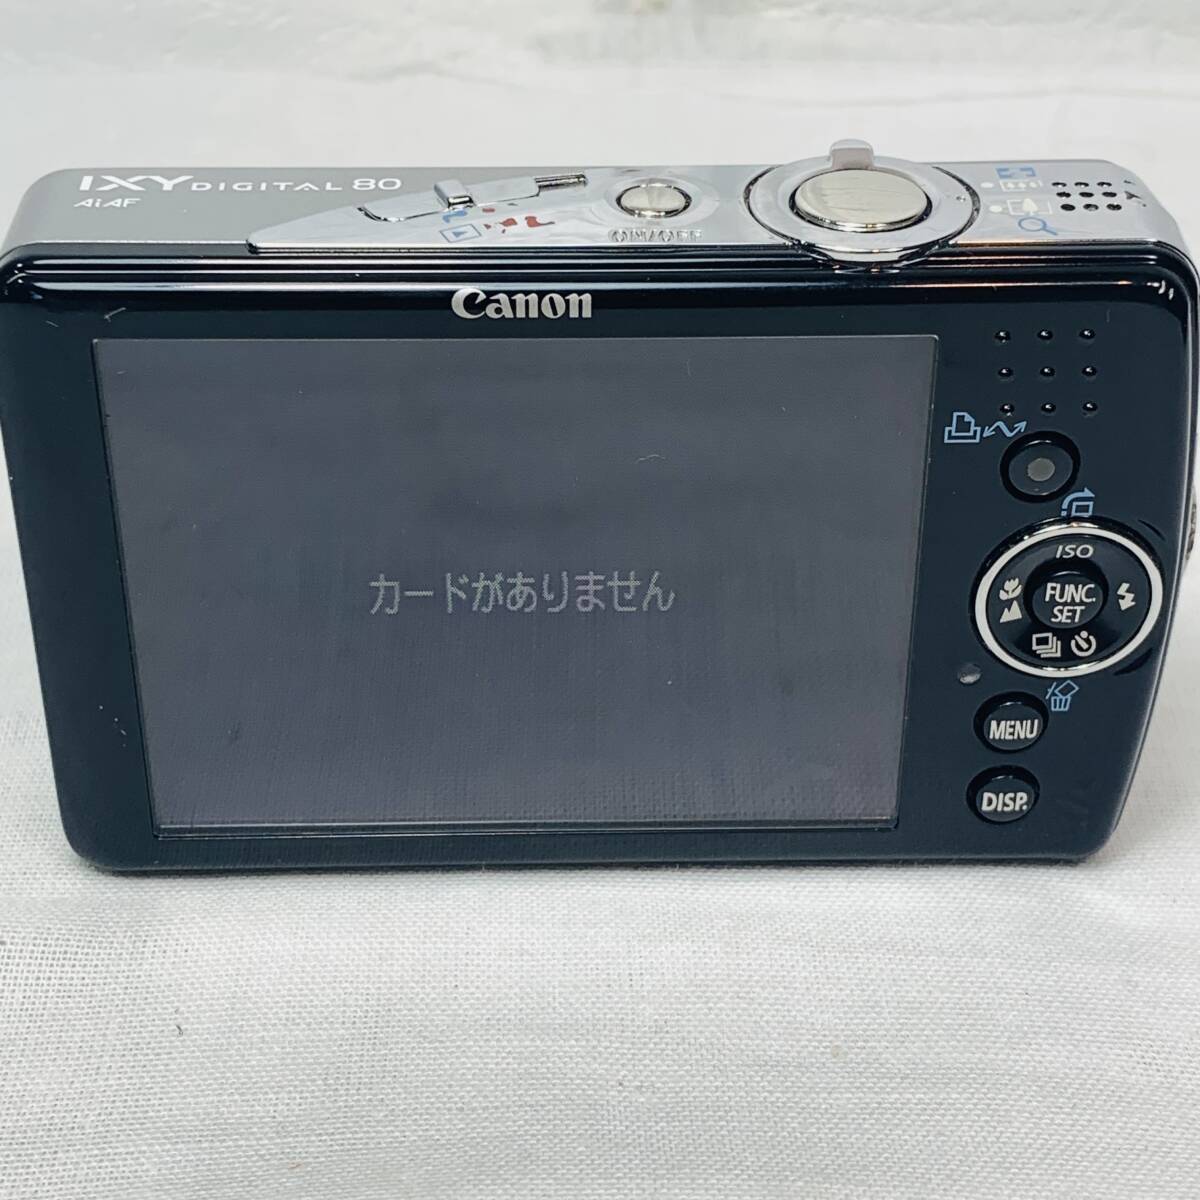 Canon キャノン IXY DIGITAL 80 PC1147 デジタルカメラ シルバー ジャンク品 1円スタートの画像7